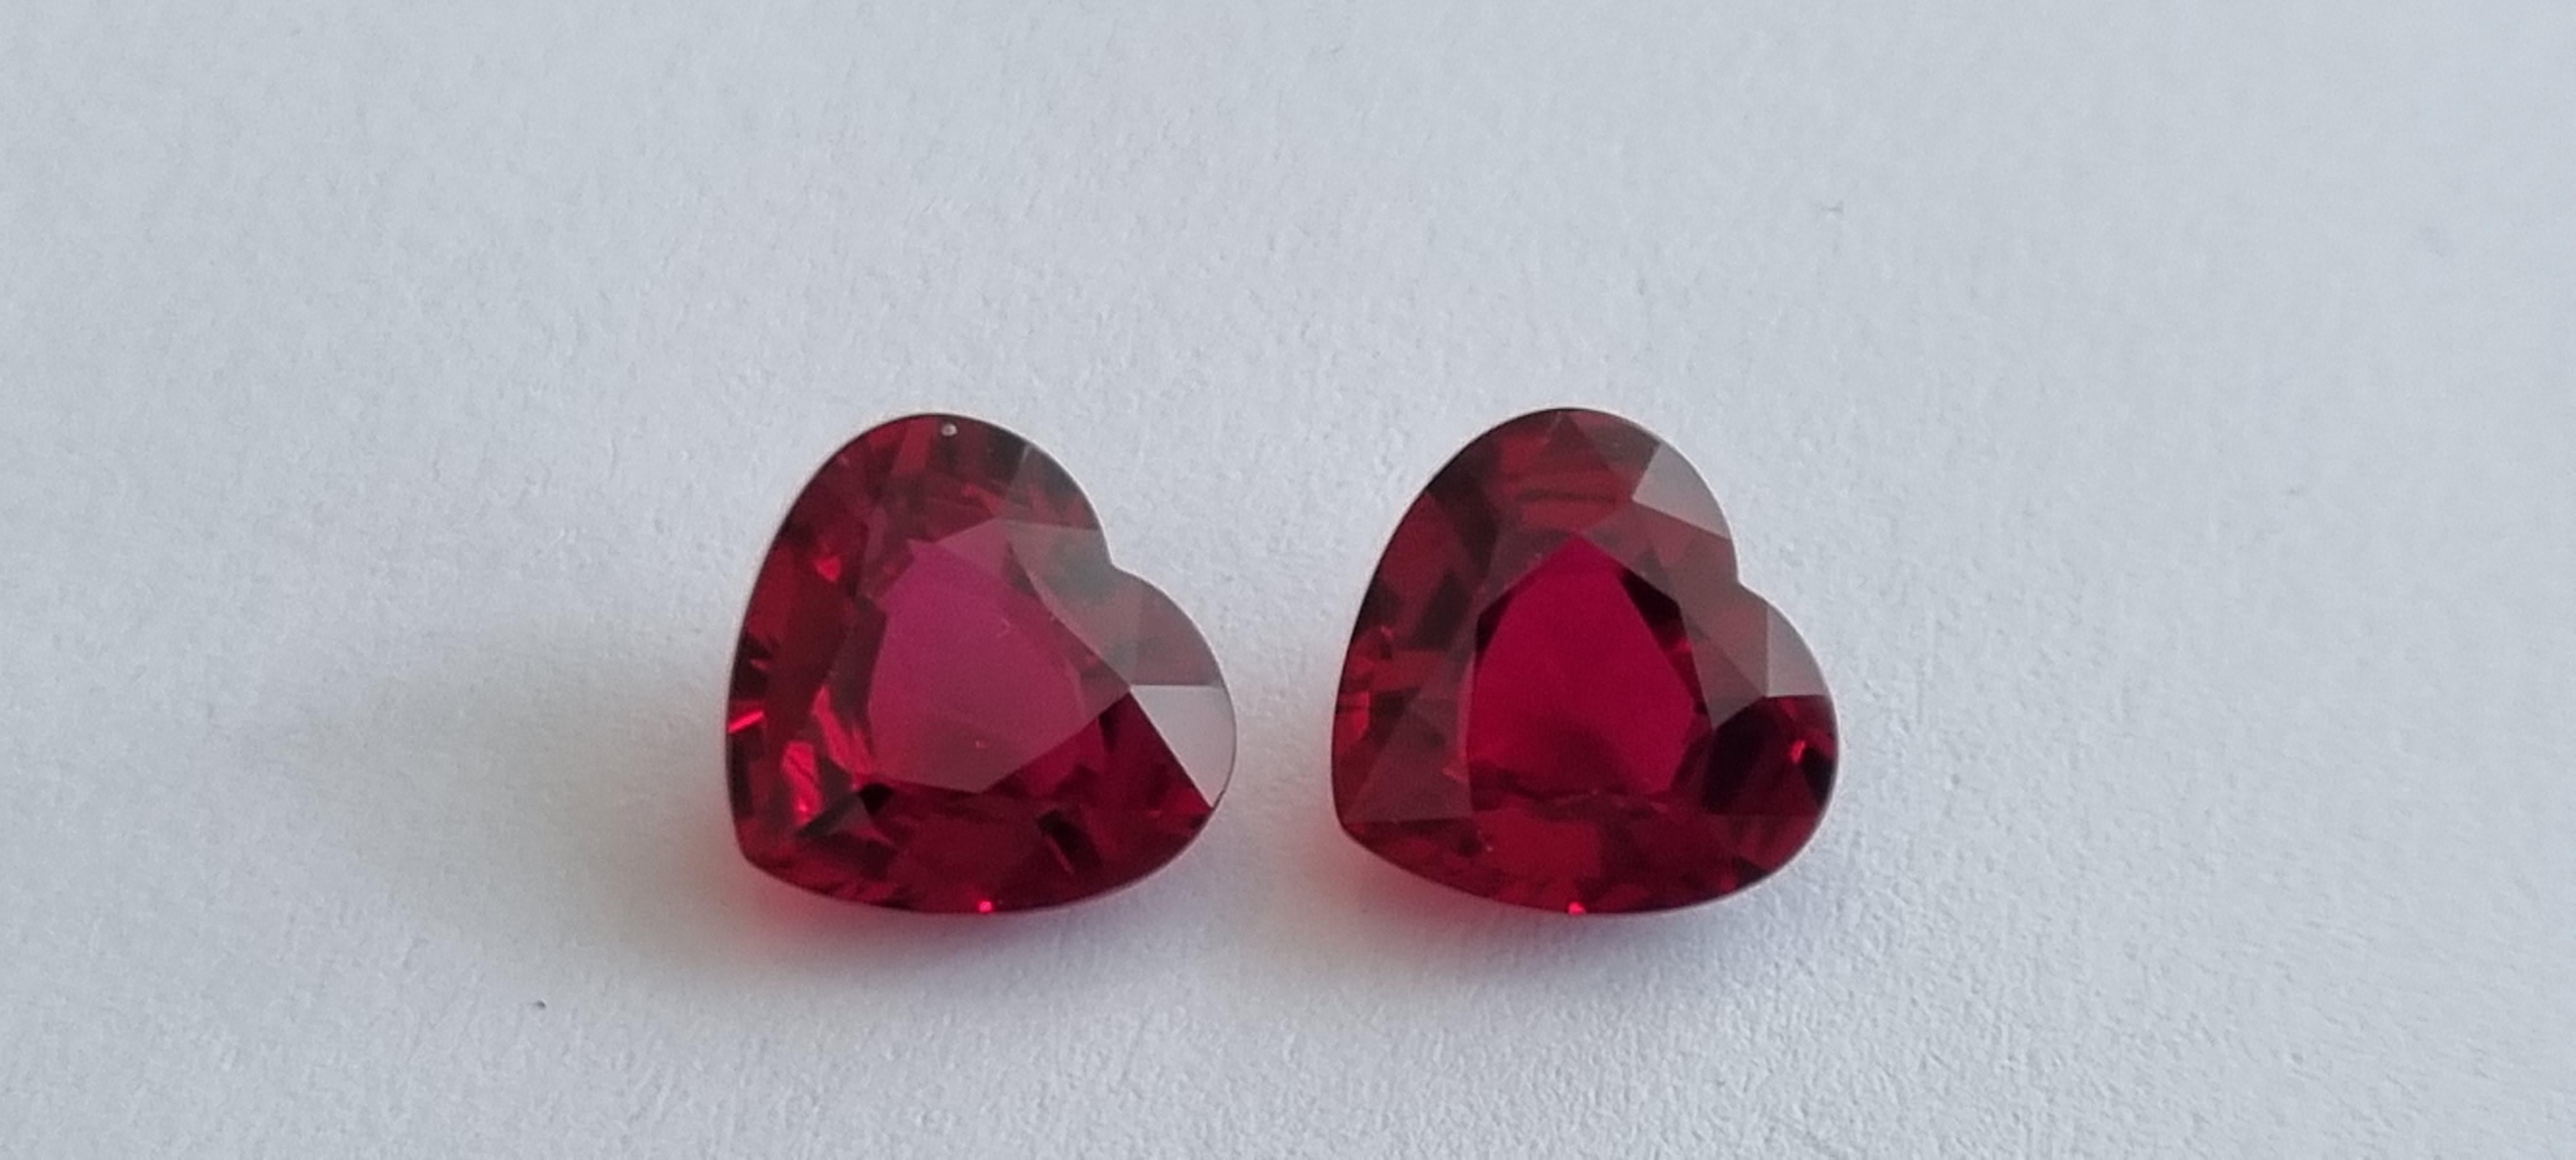 10 carat Pair of Heartshape Pigeons Blood Rubies For Sale 3